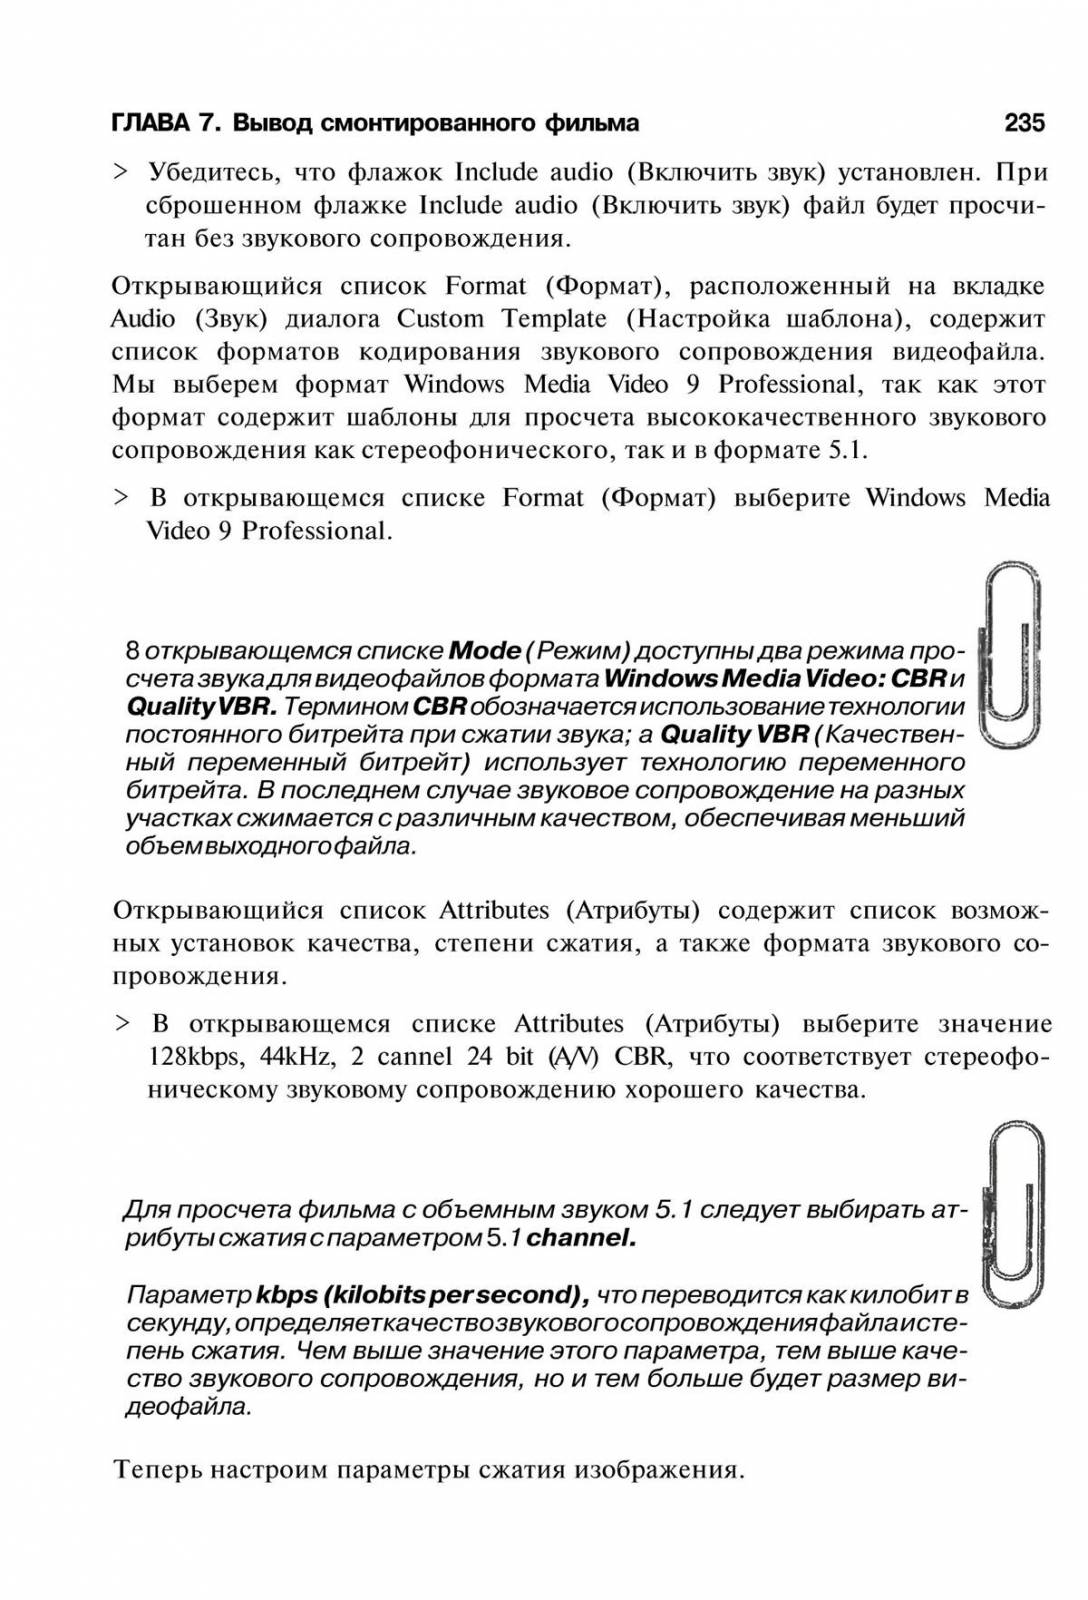 http://redaktori-uroki.3dn.ru/_ph/14/423886439.jpg